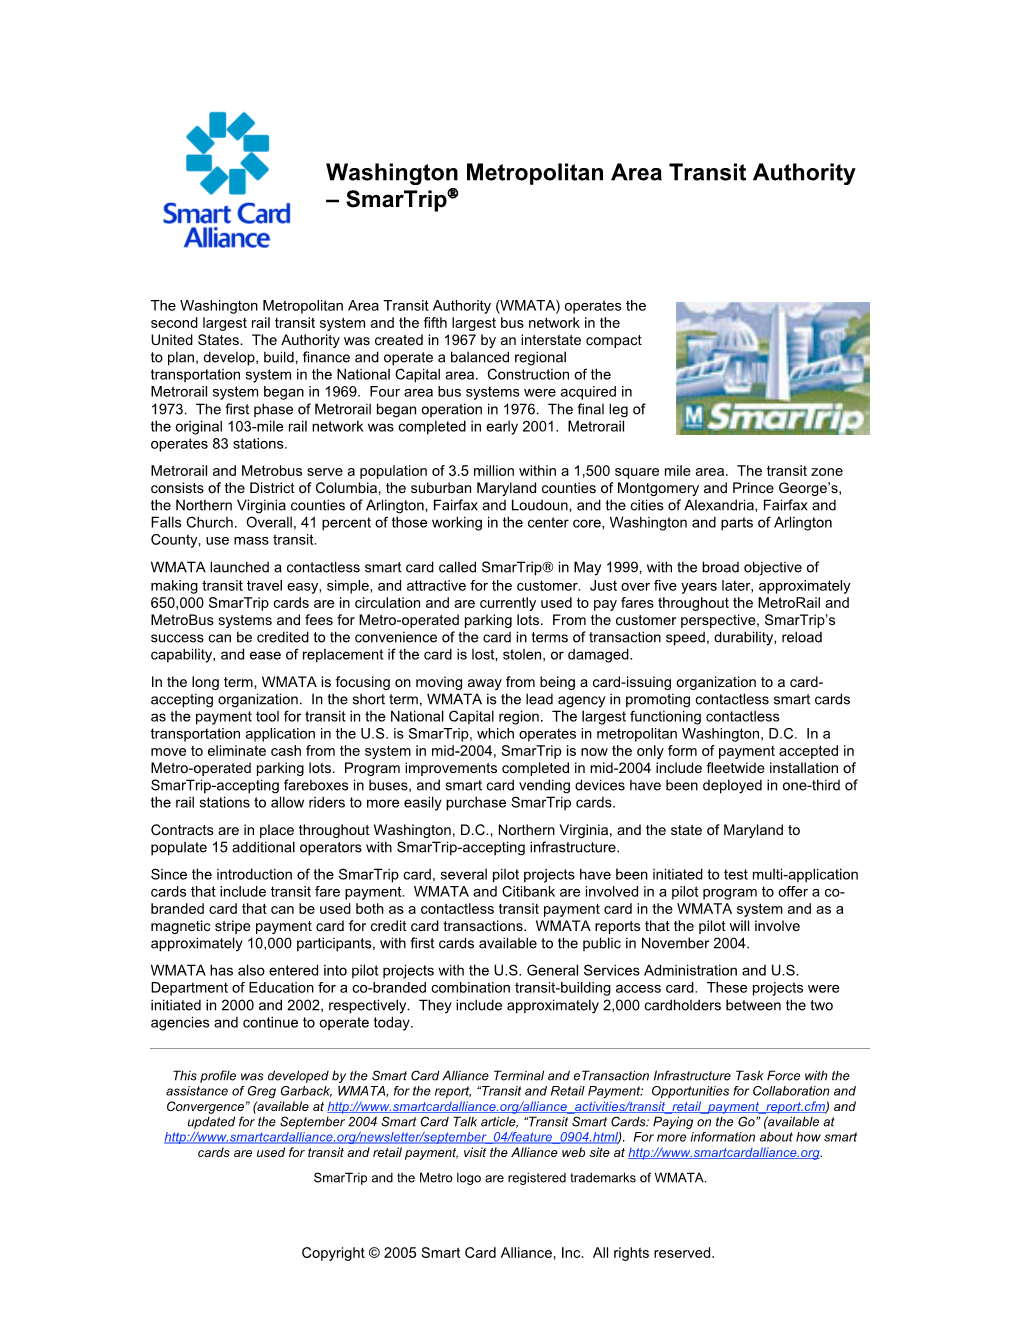 Washington Metropolitan Area Transit Authority – Smartrip